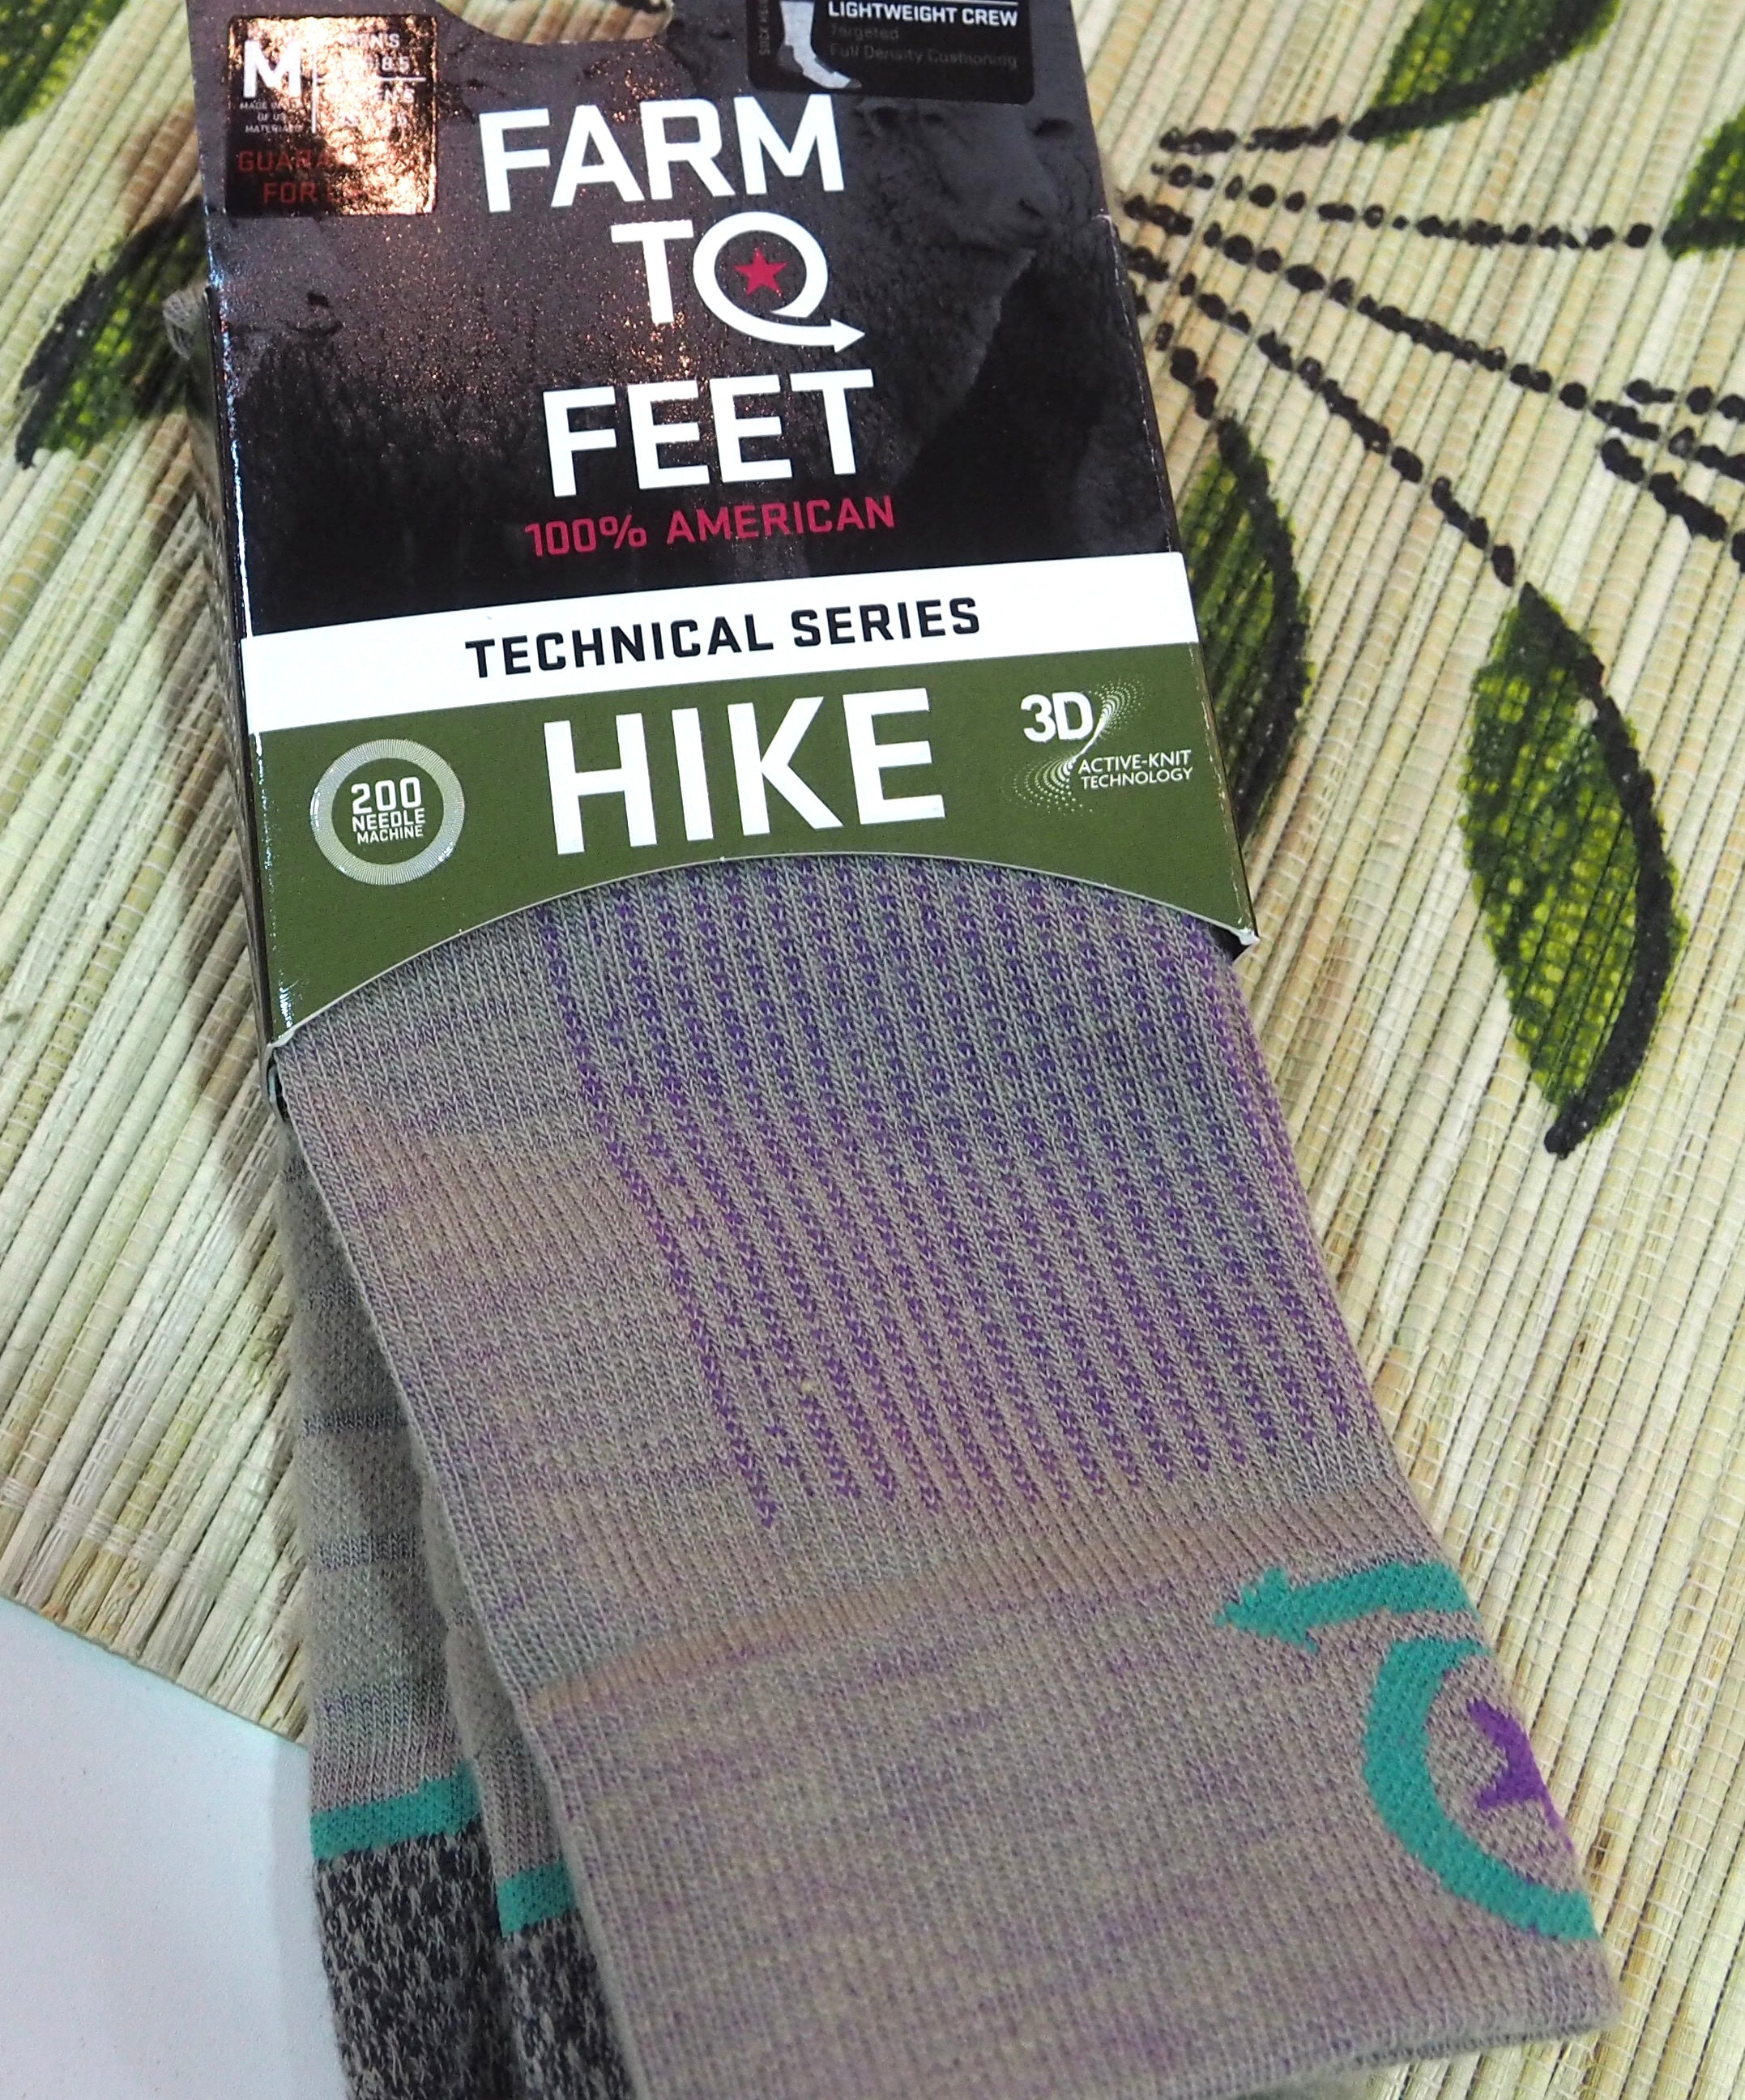 Farm to Feet Hike Crew Tan Sock